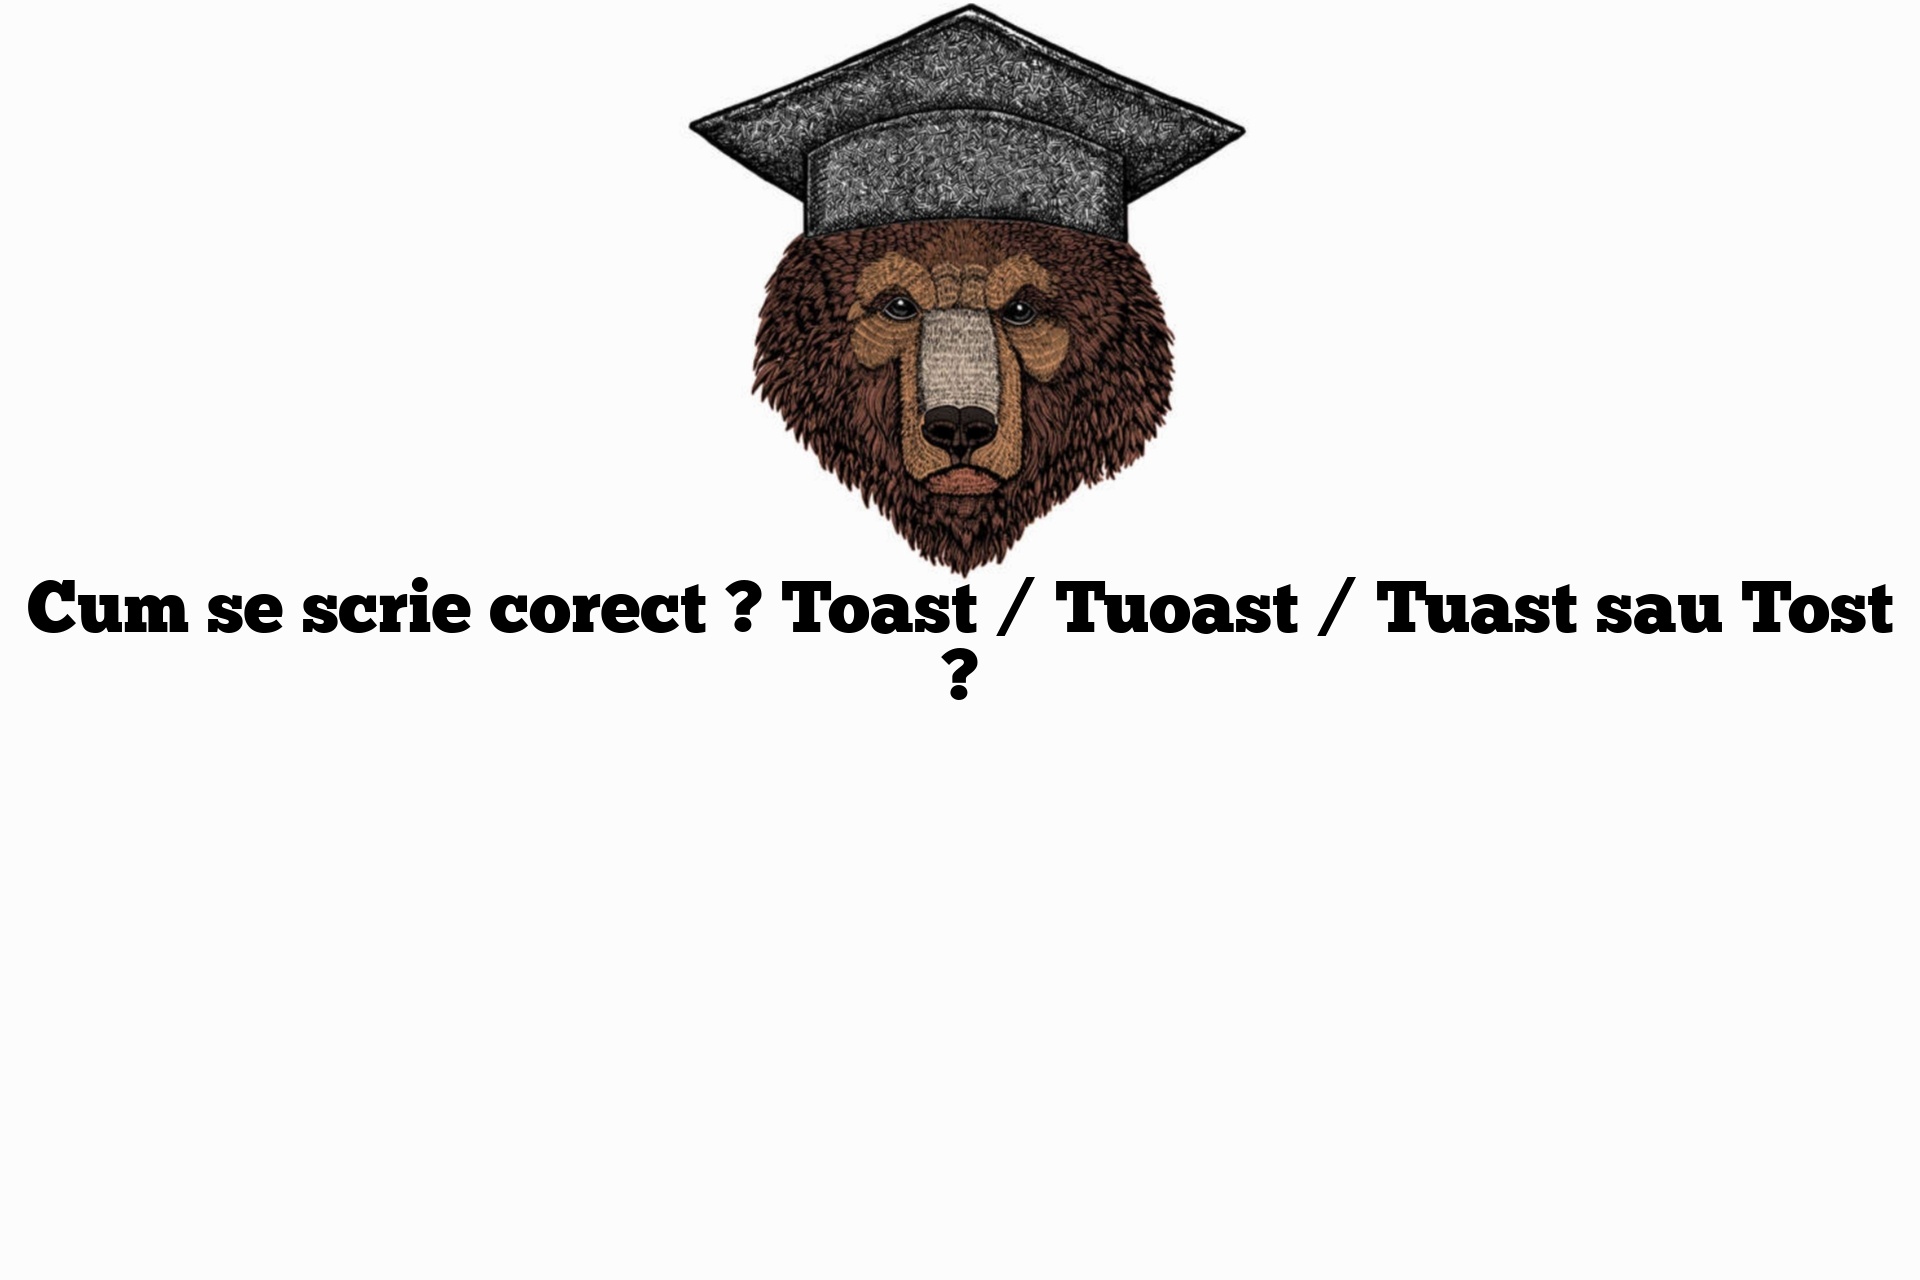 Cum se scrie corect ? Toast / Tuoast / Tuast sau Tost ?